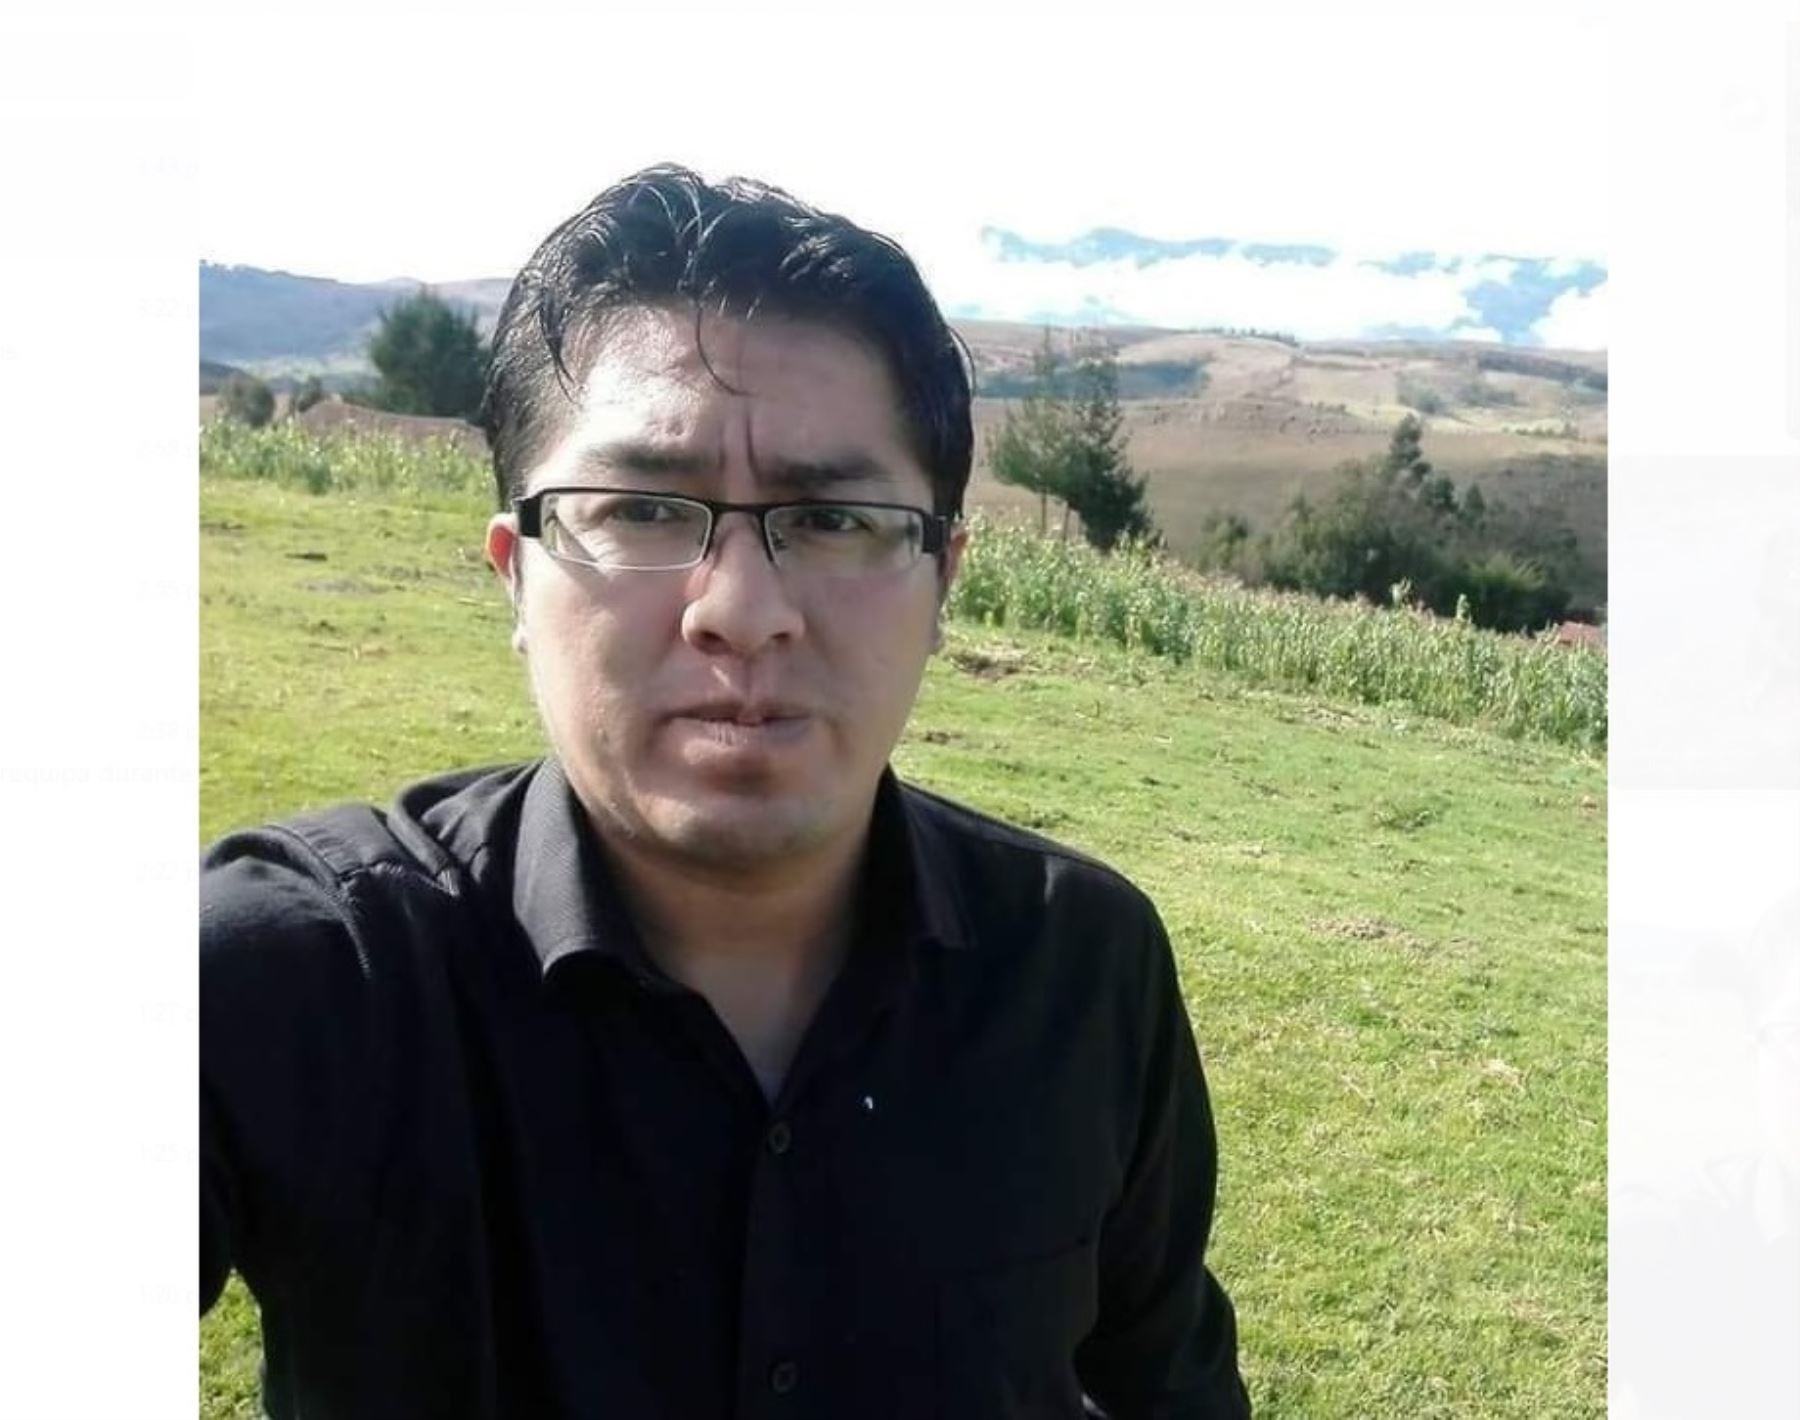 La Policía Nacional identificó los restos mortales hallados en Huanchaco, Trujillo, como Alfonso Mejía Yopla, quien se encontraba desaparecido desde hace cinco días. ANDINA/Difusión